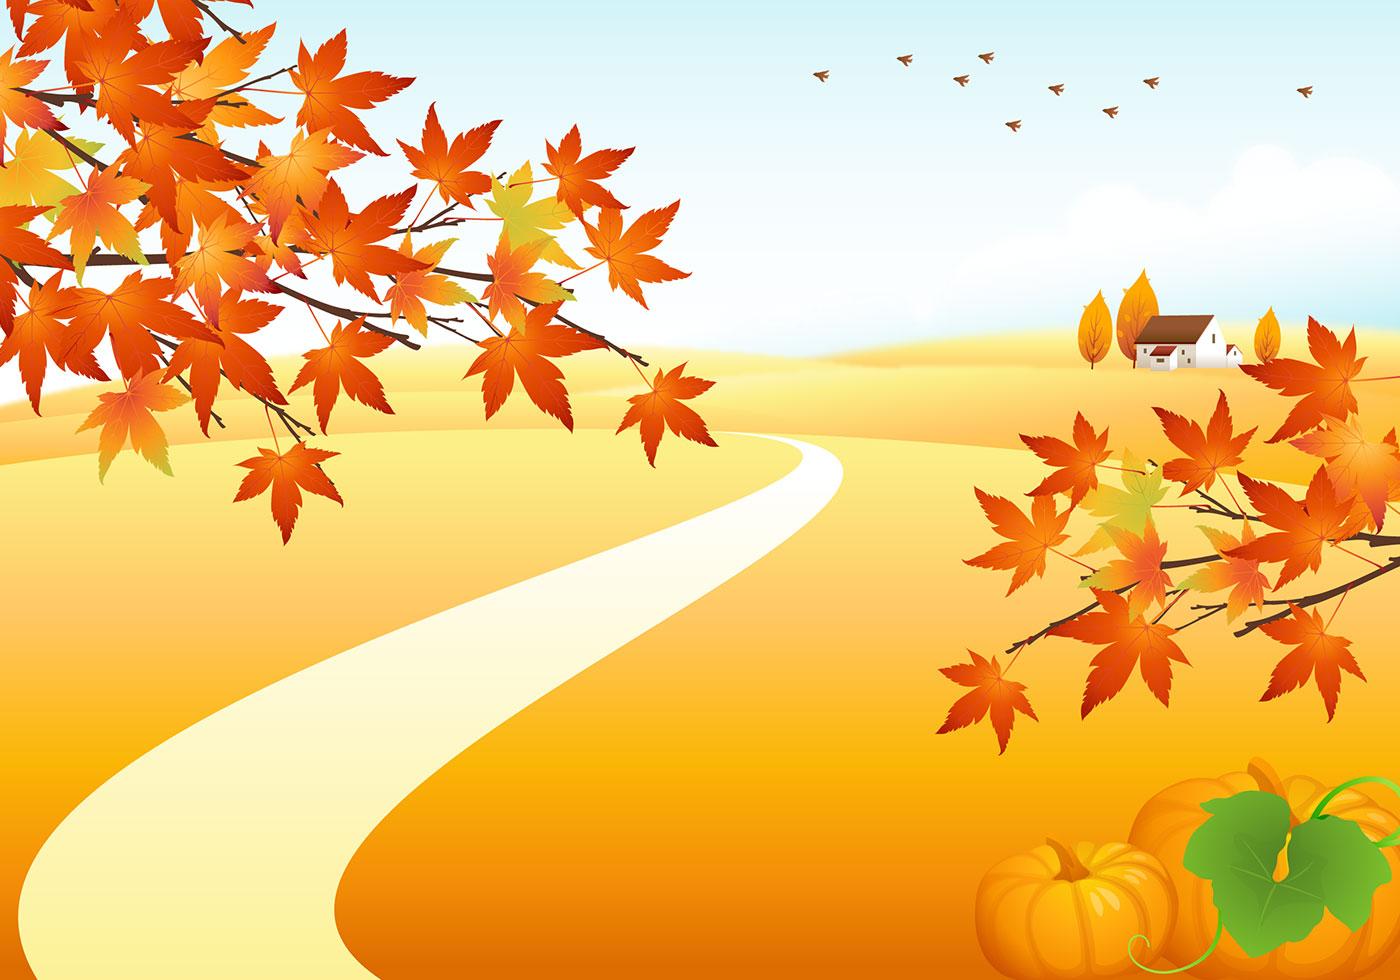 1400 x 980 · jpeg - Autumn Landscape Vector Background 35959 - Download Free Vectors ...